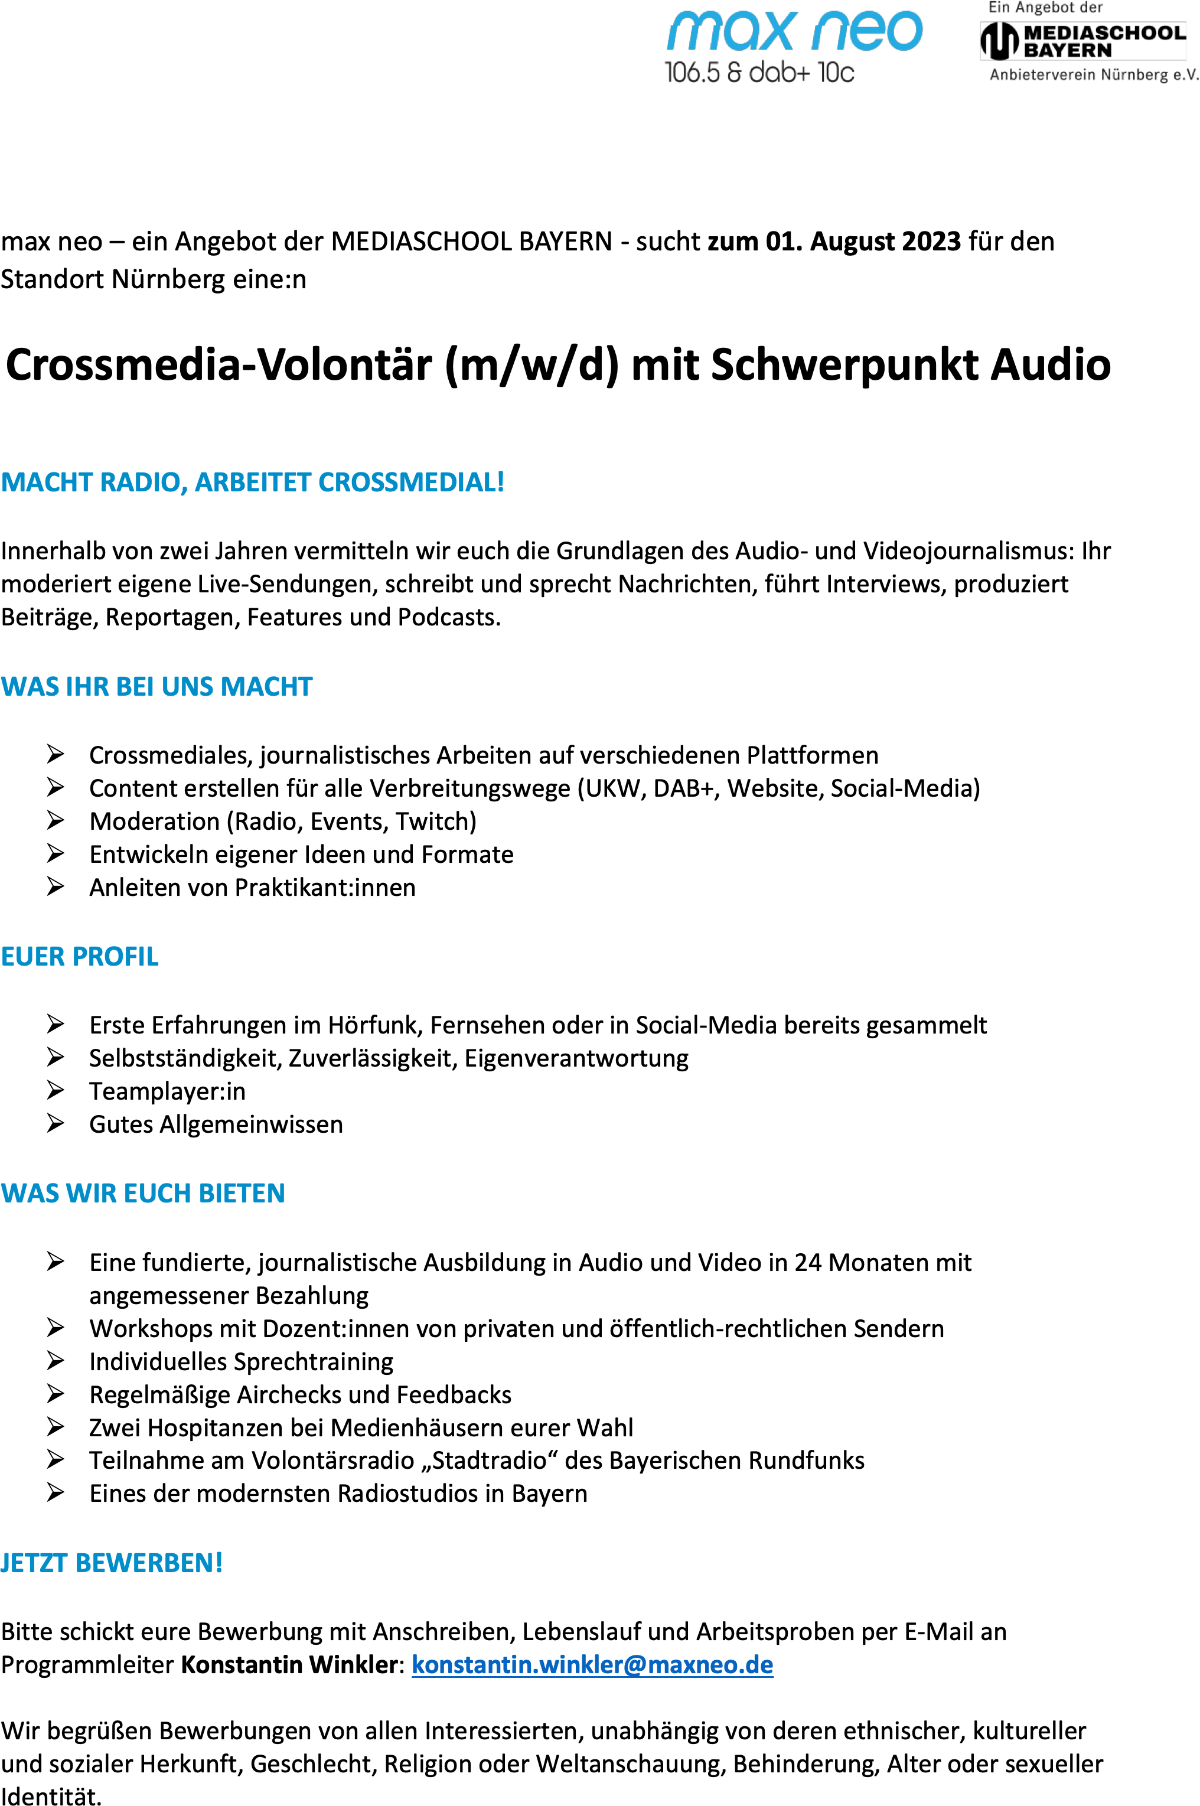 max neo sucht Crossmedia-Volontär (m/w/d) mit Schwerpunkt Audio